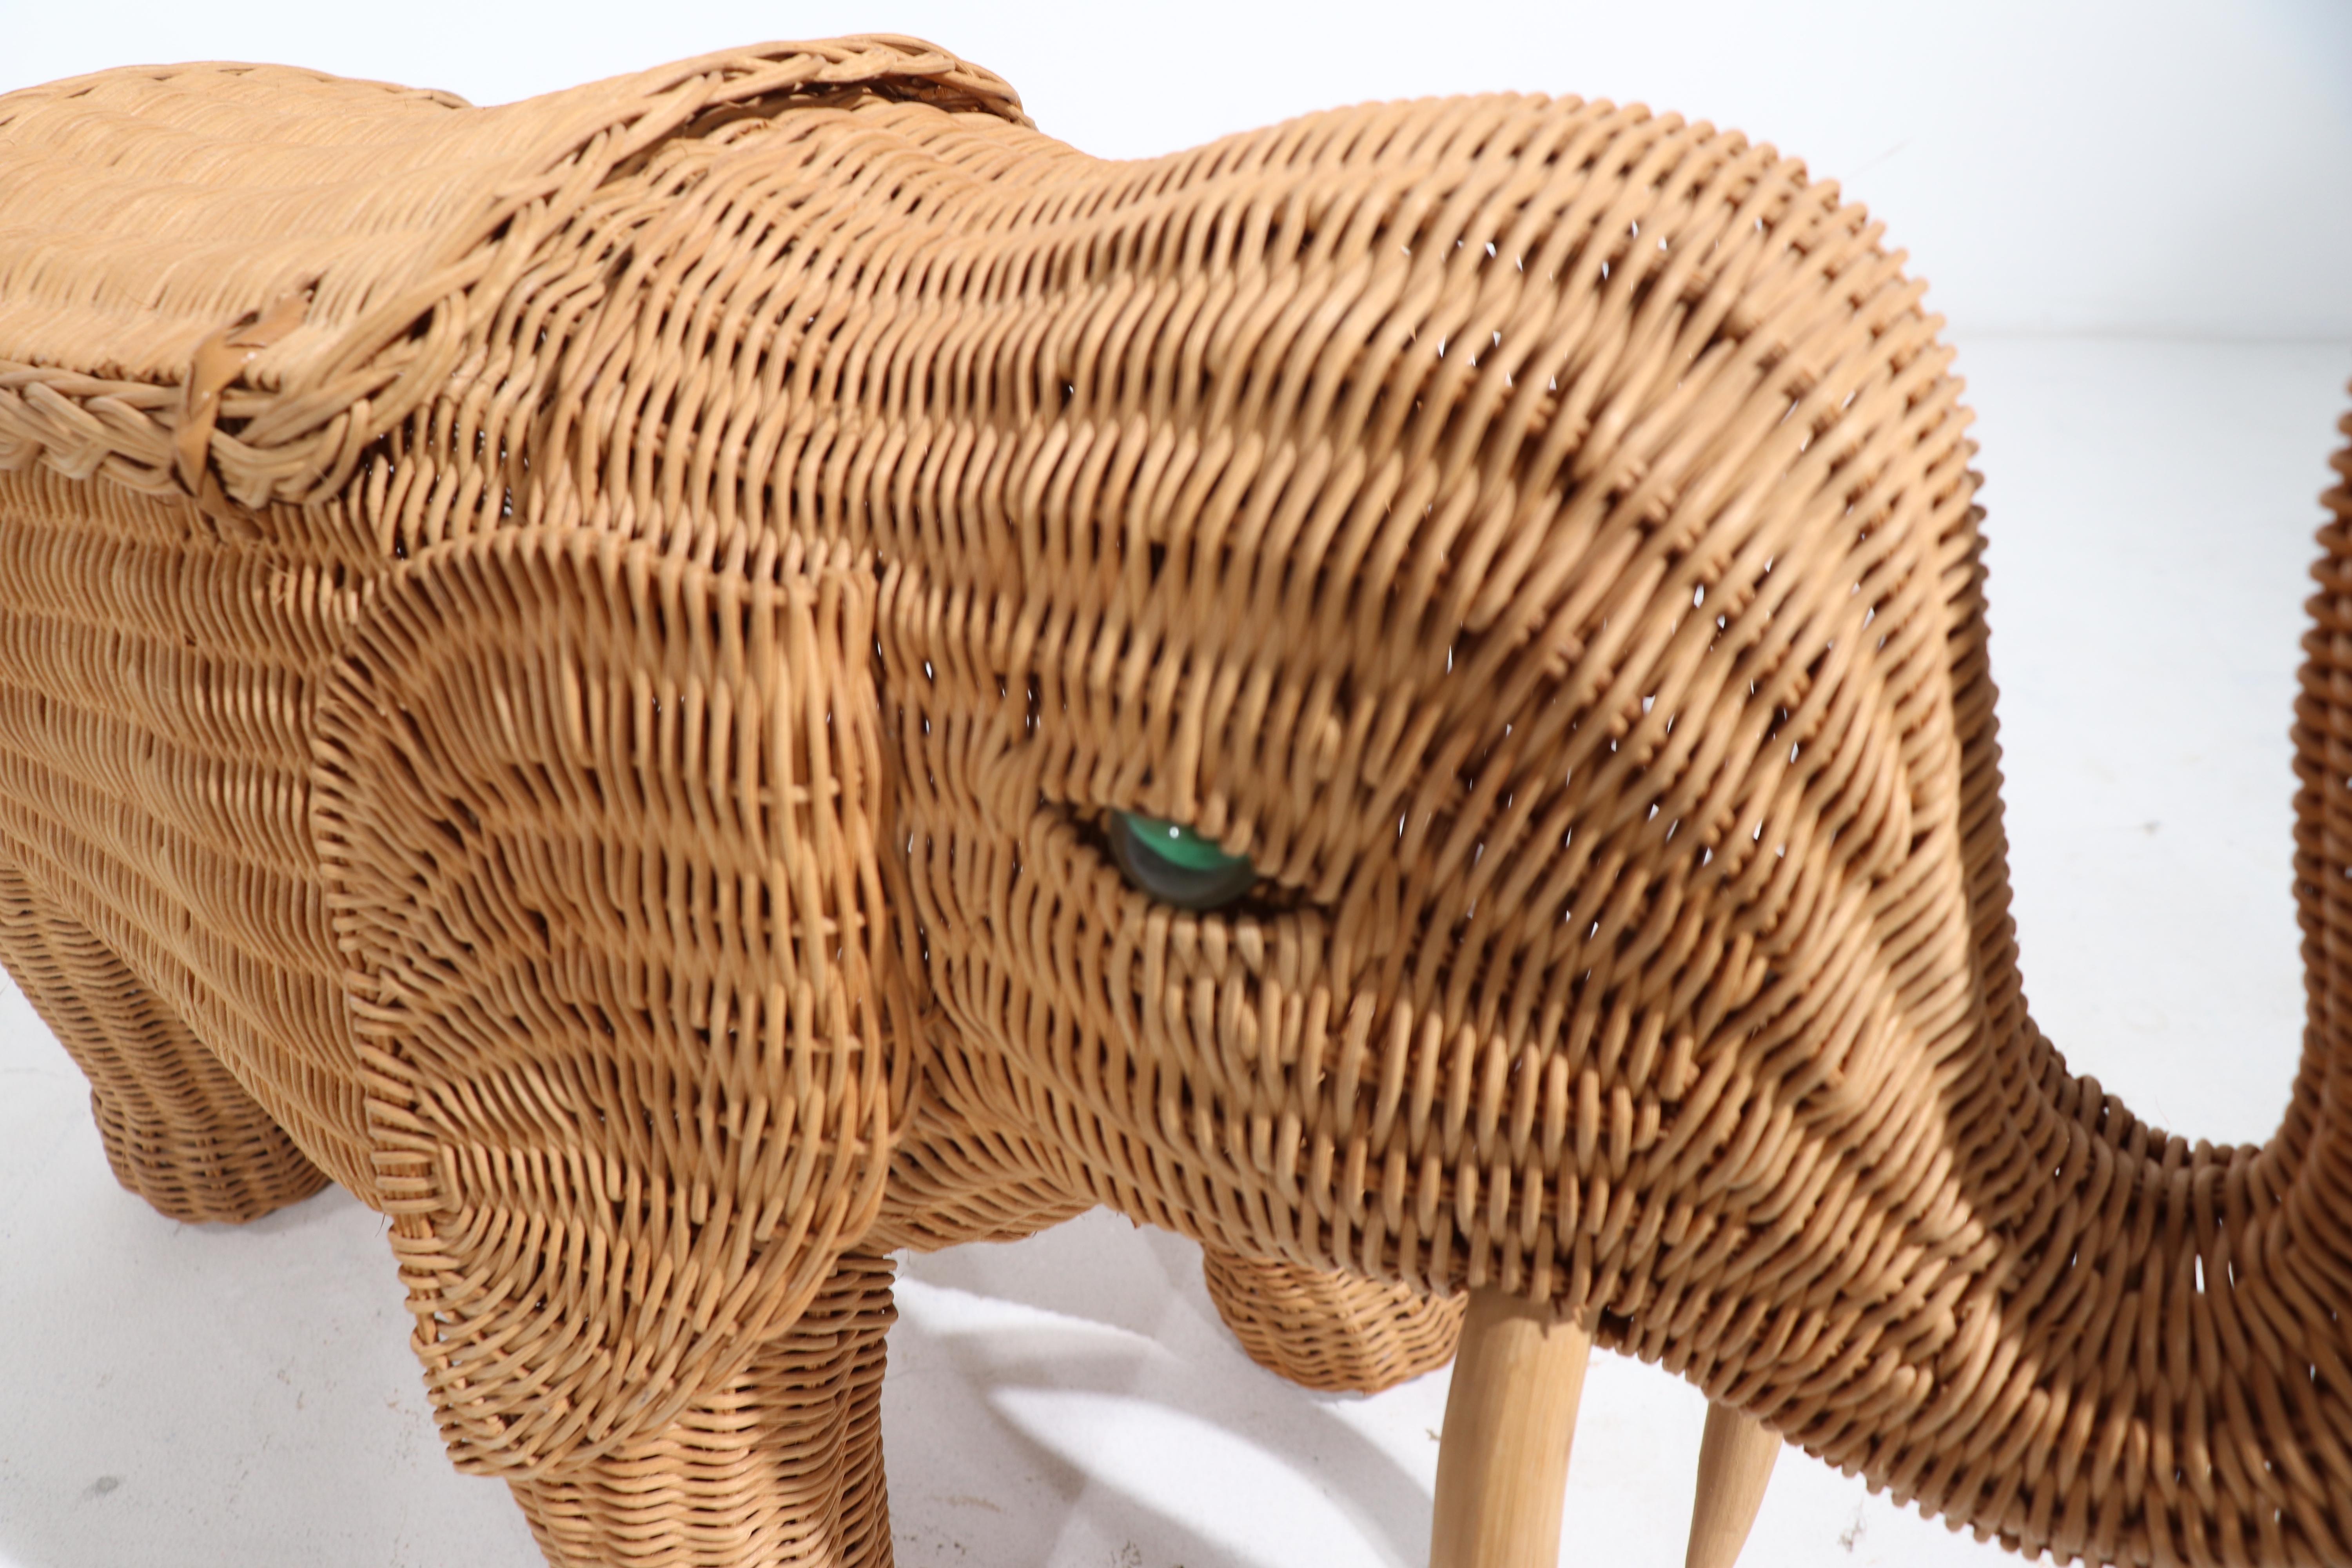 Woven Wicker Elephant Basket 1